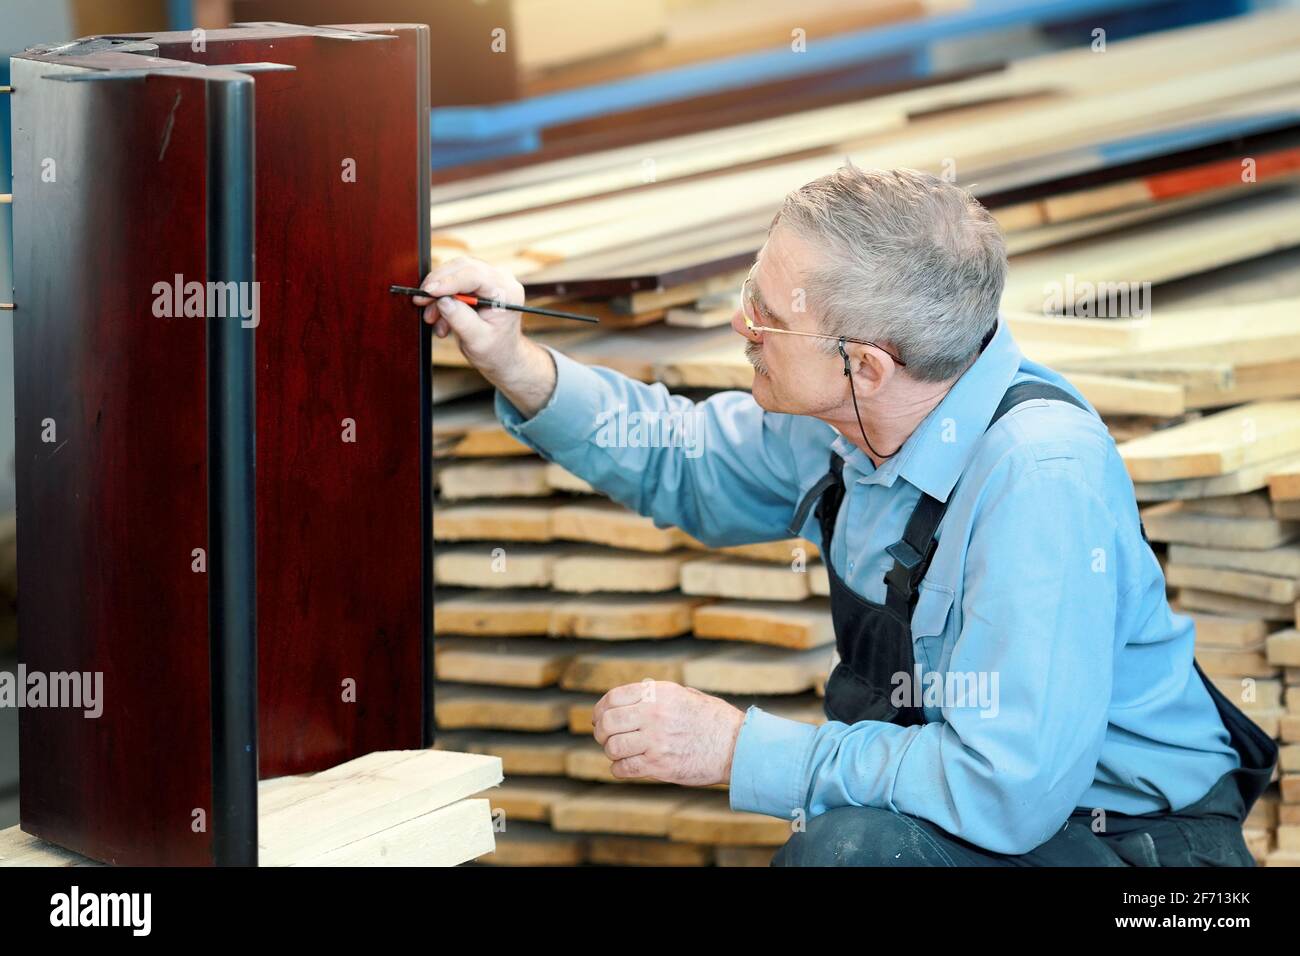 Un anciano con gafas y pelo gris trabaja con madera en una tienda de carpintería. Un trabajador de apariencia caucásica se dedica a la restauración de muebles. Trabajo a tiempo parcial para un pensionista Foto de stock